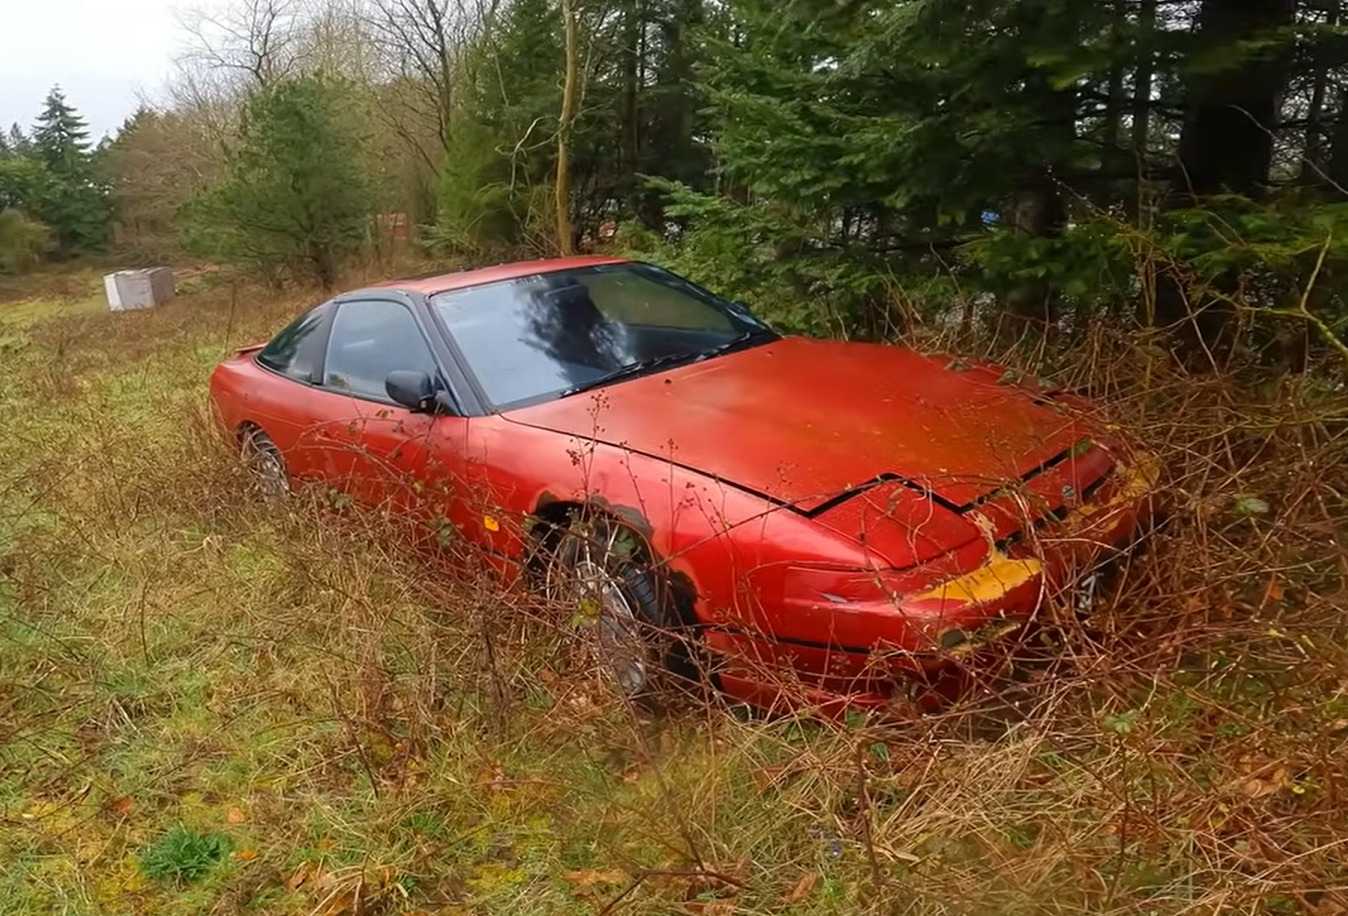 Der seltene Nissan wurde im Wald gesichtet und schien intakt zu sein